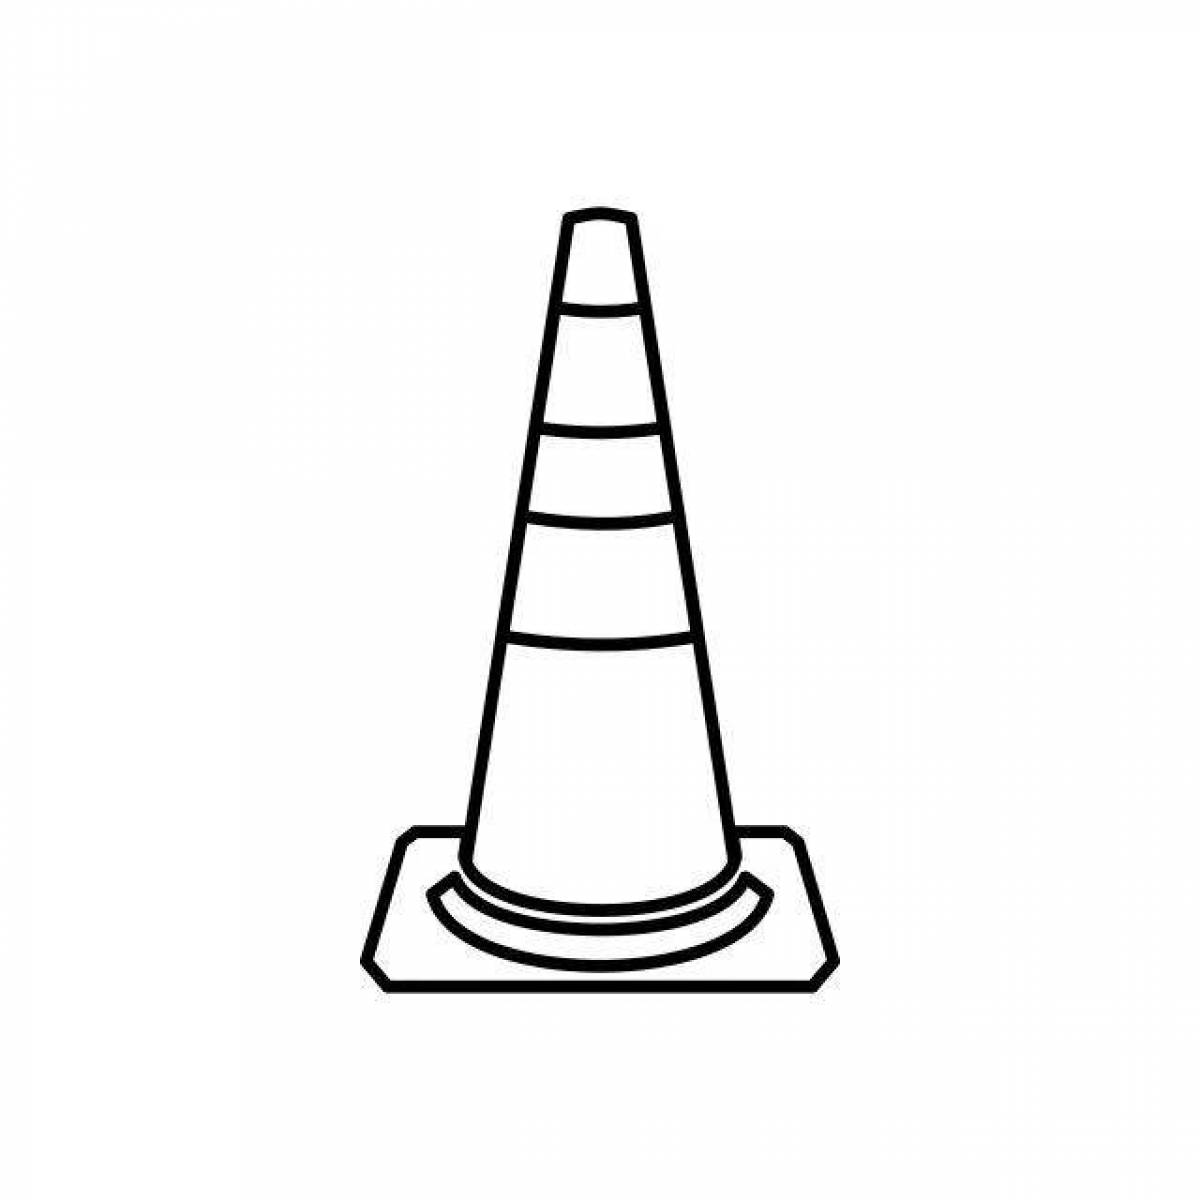 Traffic cones #9